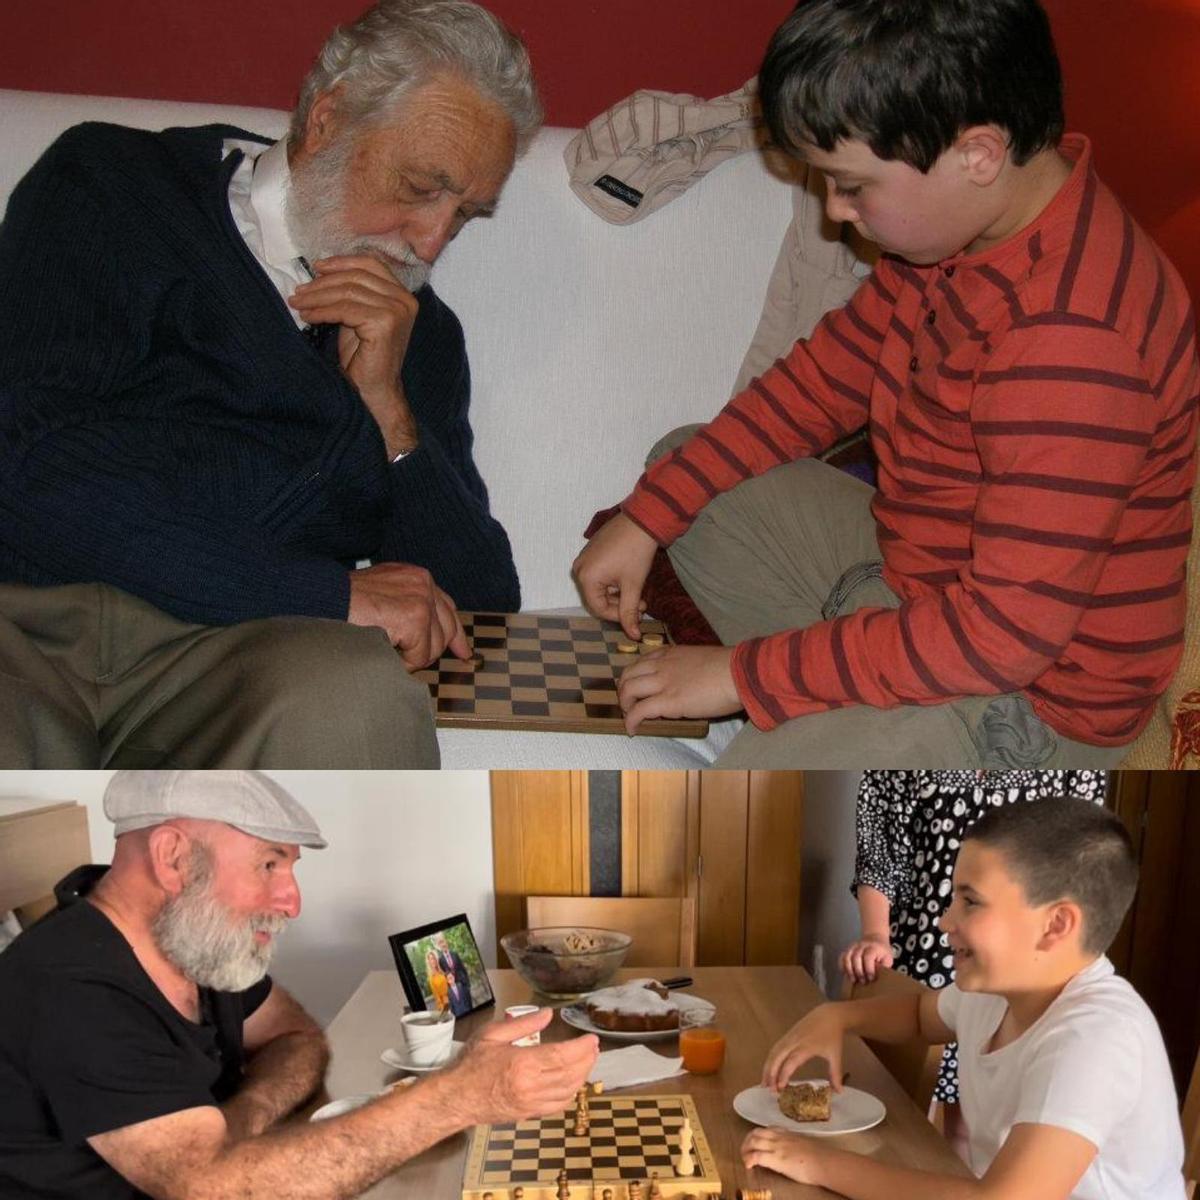 Arriba, don Miguel Garrido juega al ajedrez con su bisnieto, el hijo de Esther. Debajo, una escena parecida se ha reproducido en corto con los personajes de abuelo y nieto.